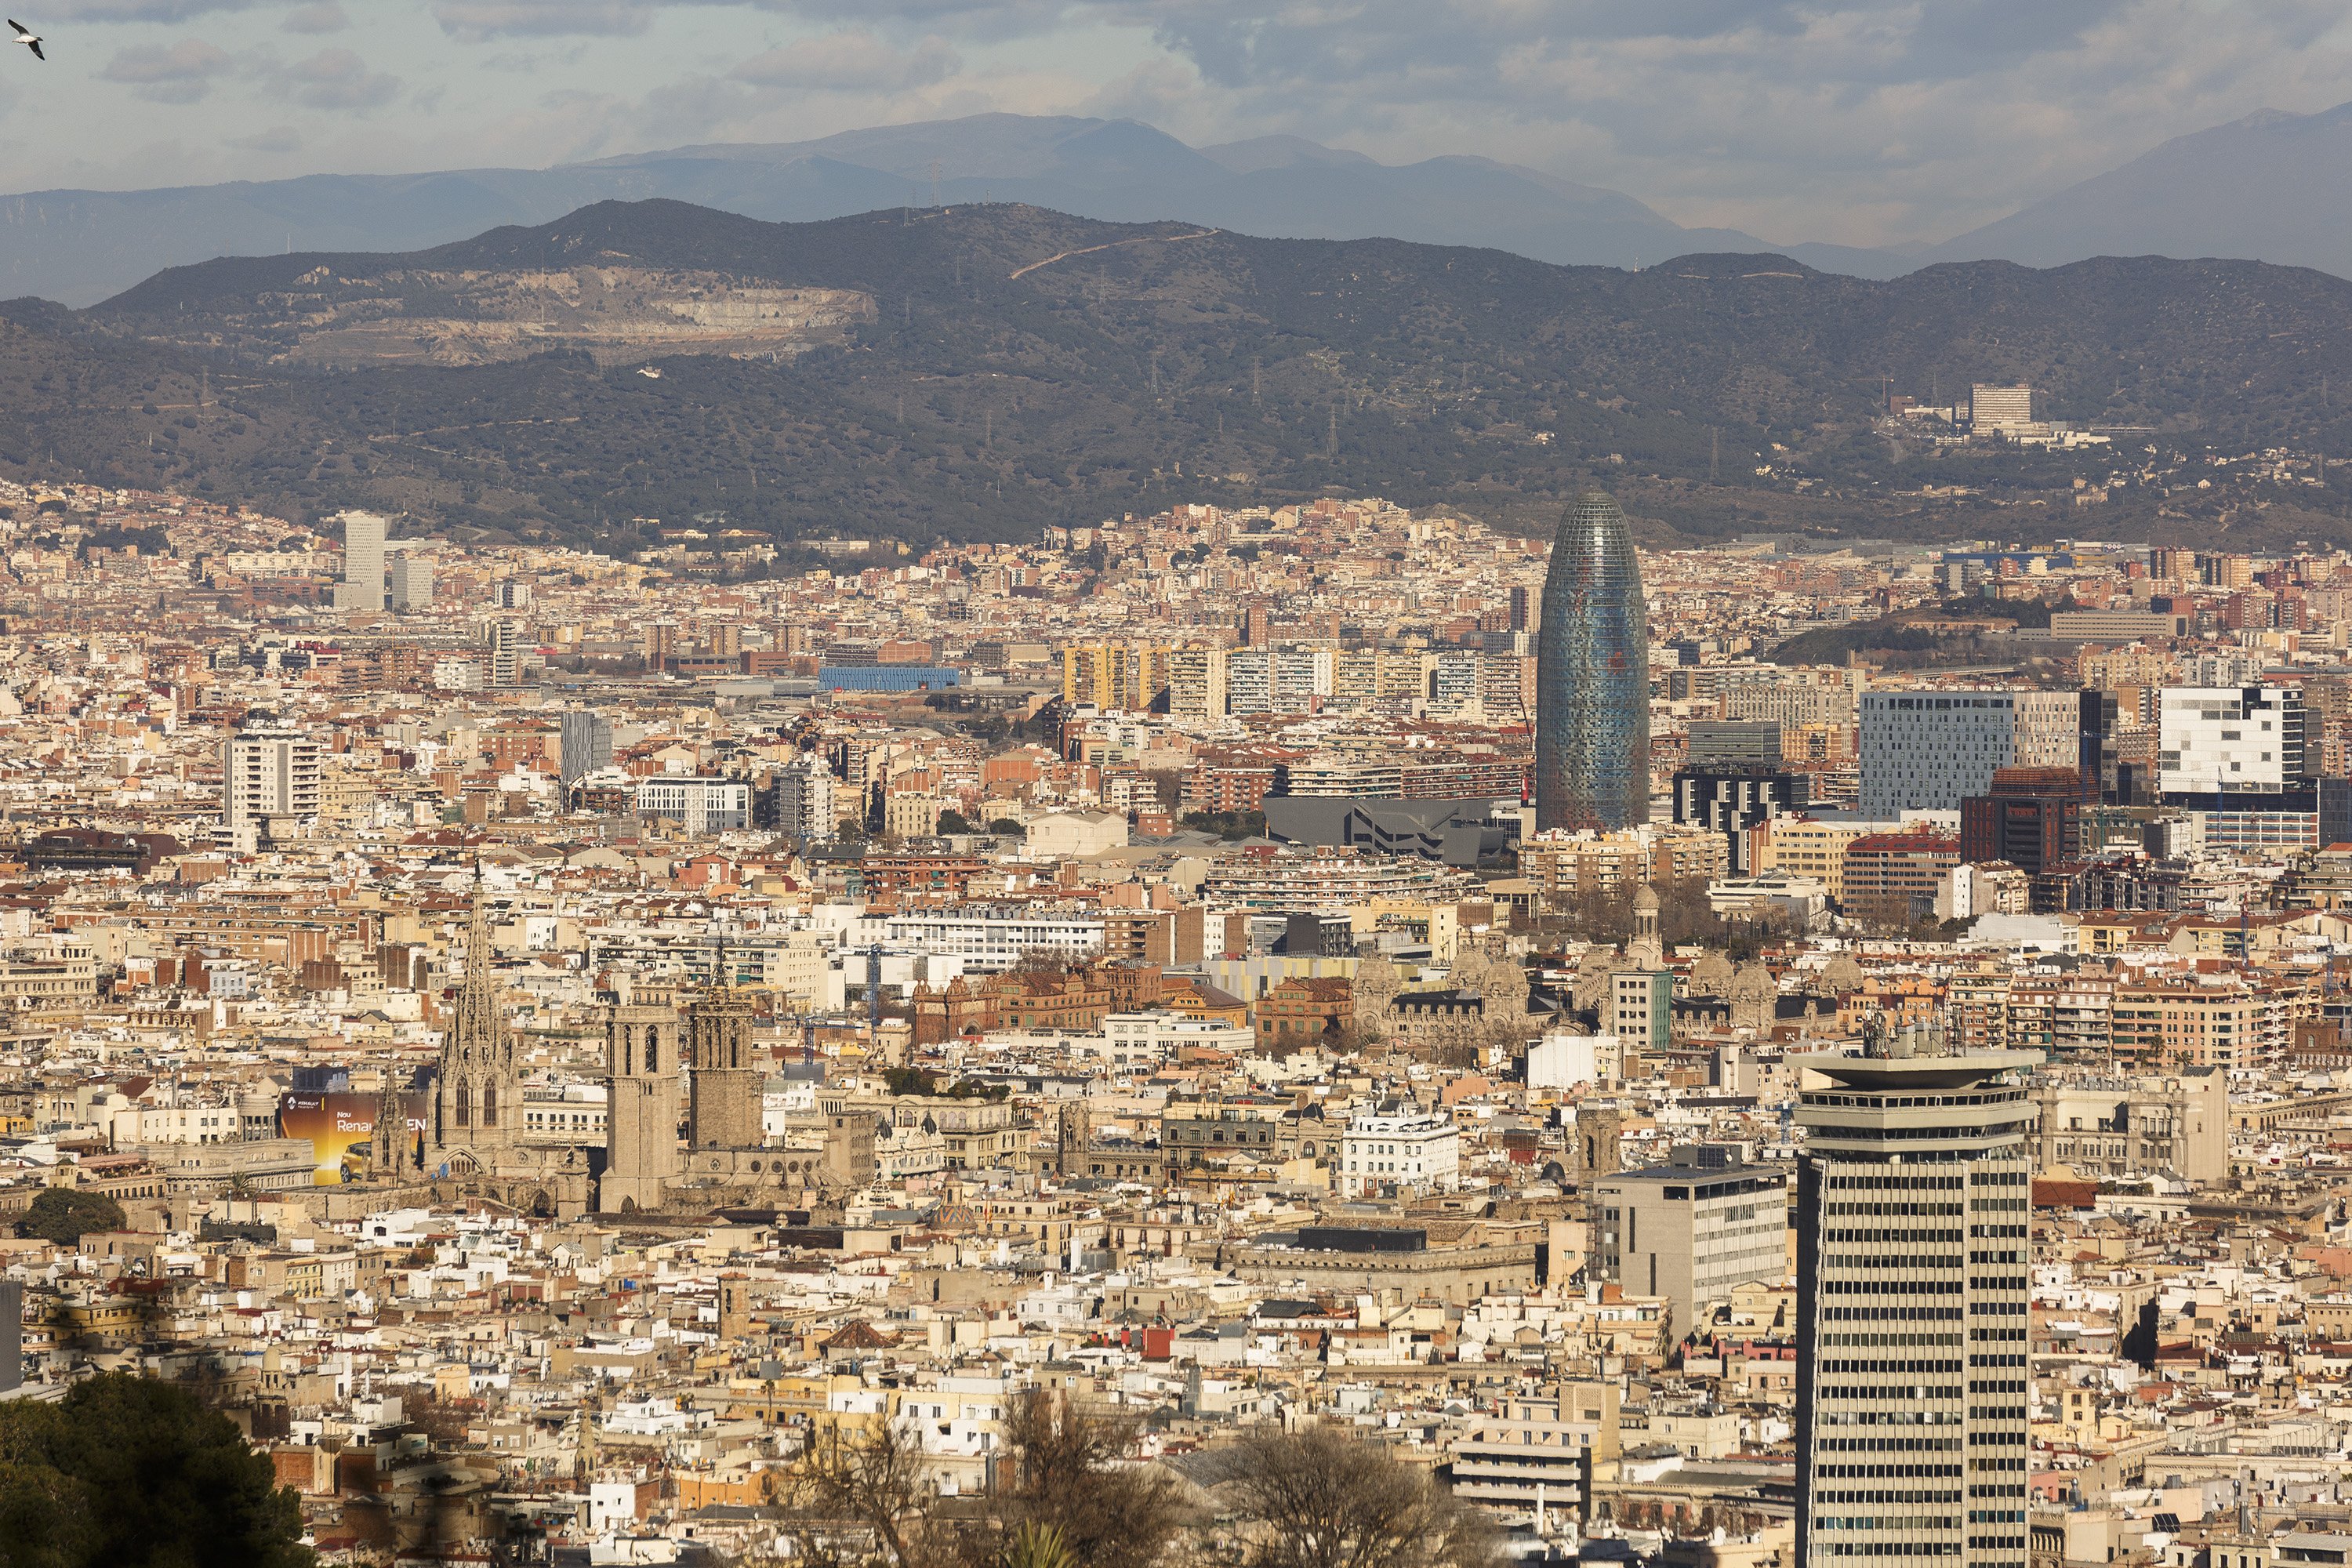 Barcelona de postal: sisena al rànquing de ciutats europees més boniques